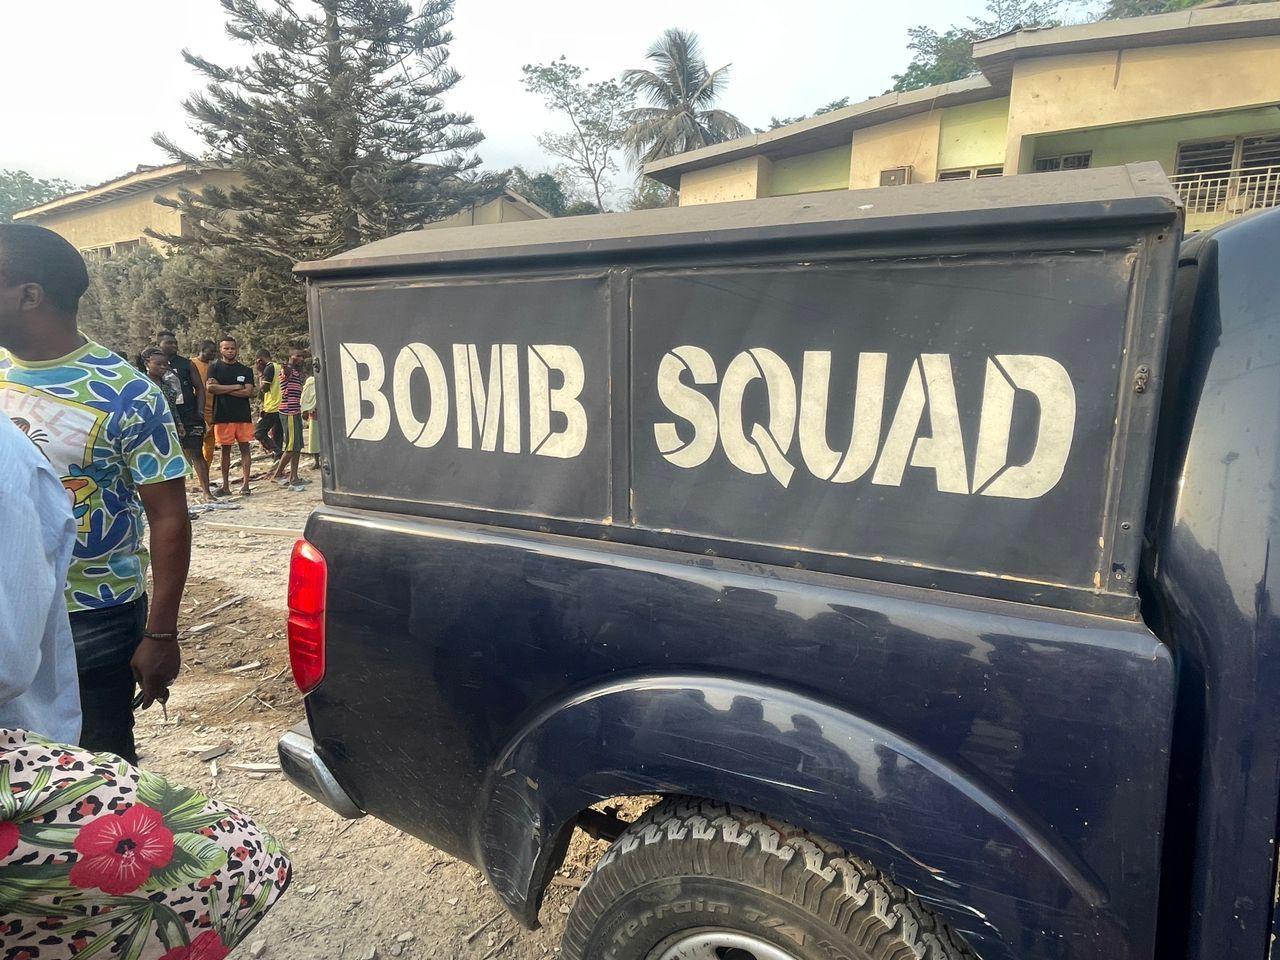 Bomb squad vehicle